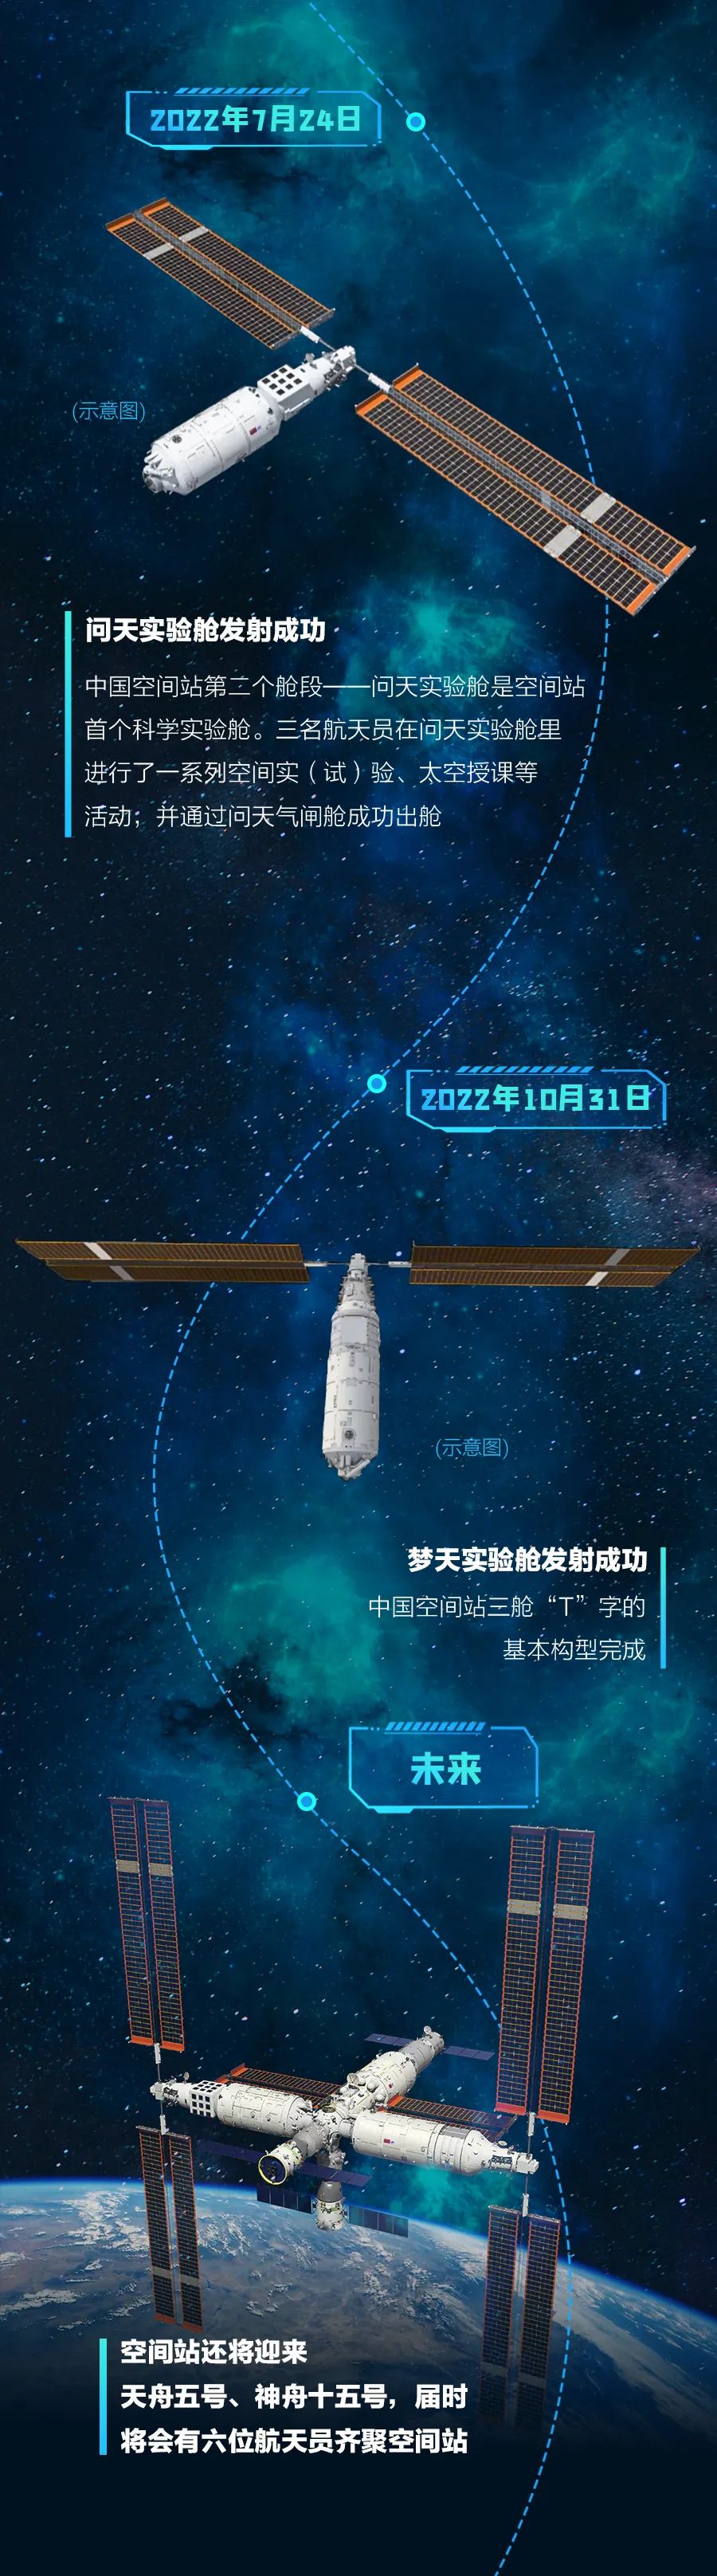 一张图带你看中国空间站“成长历程”